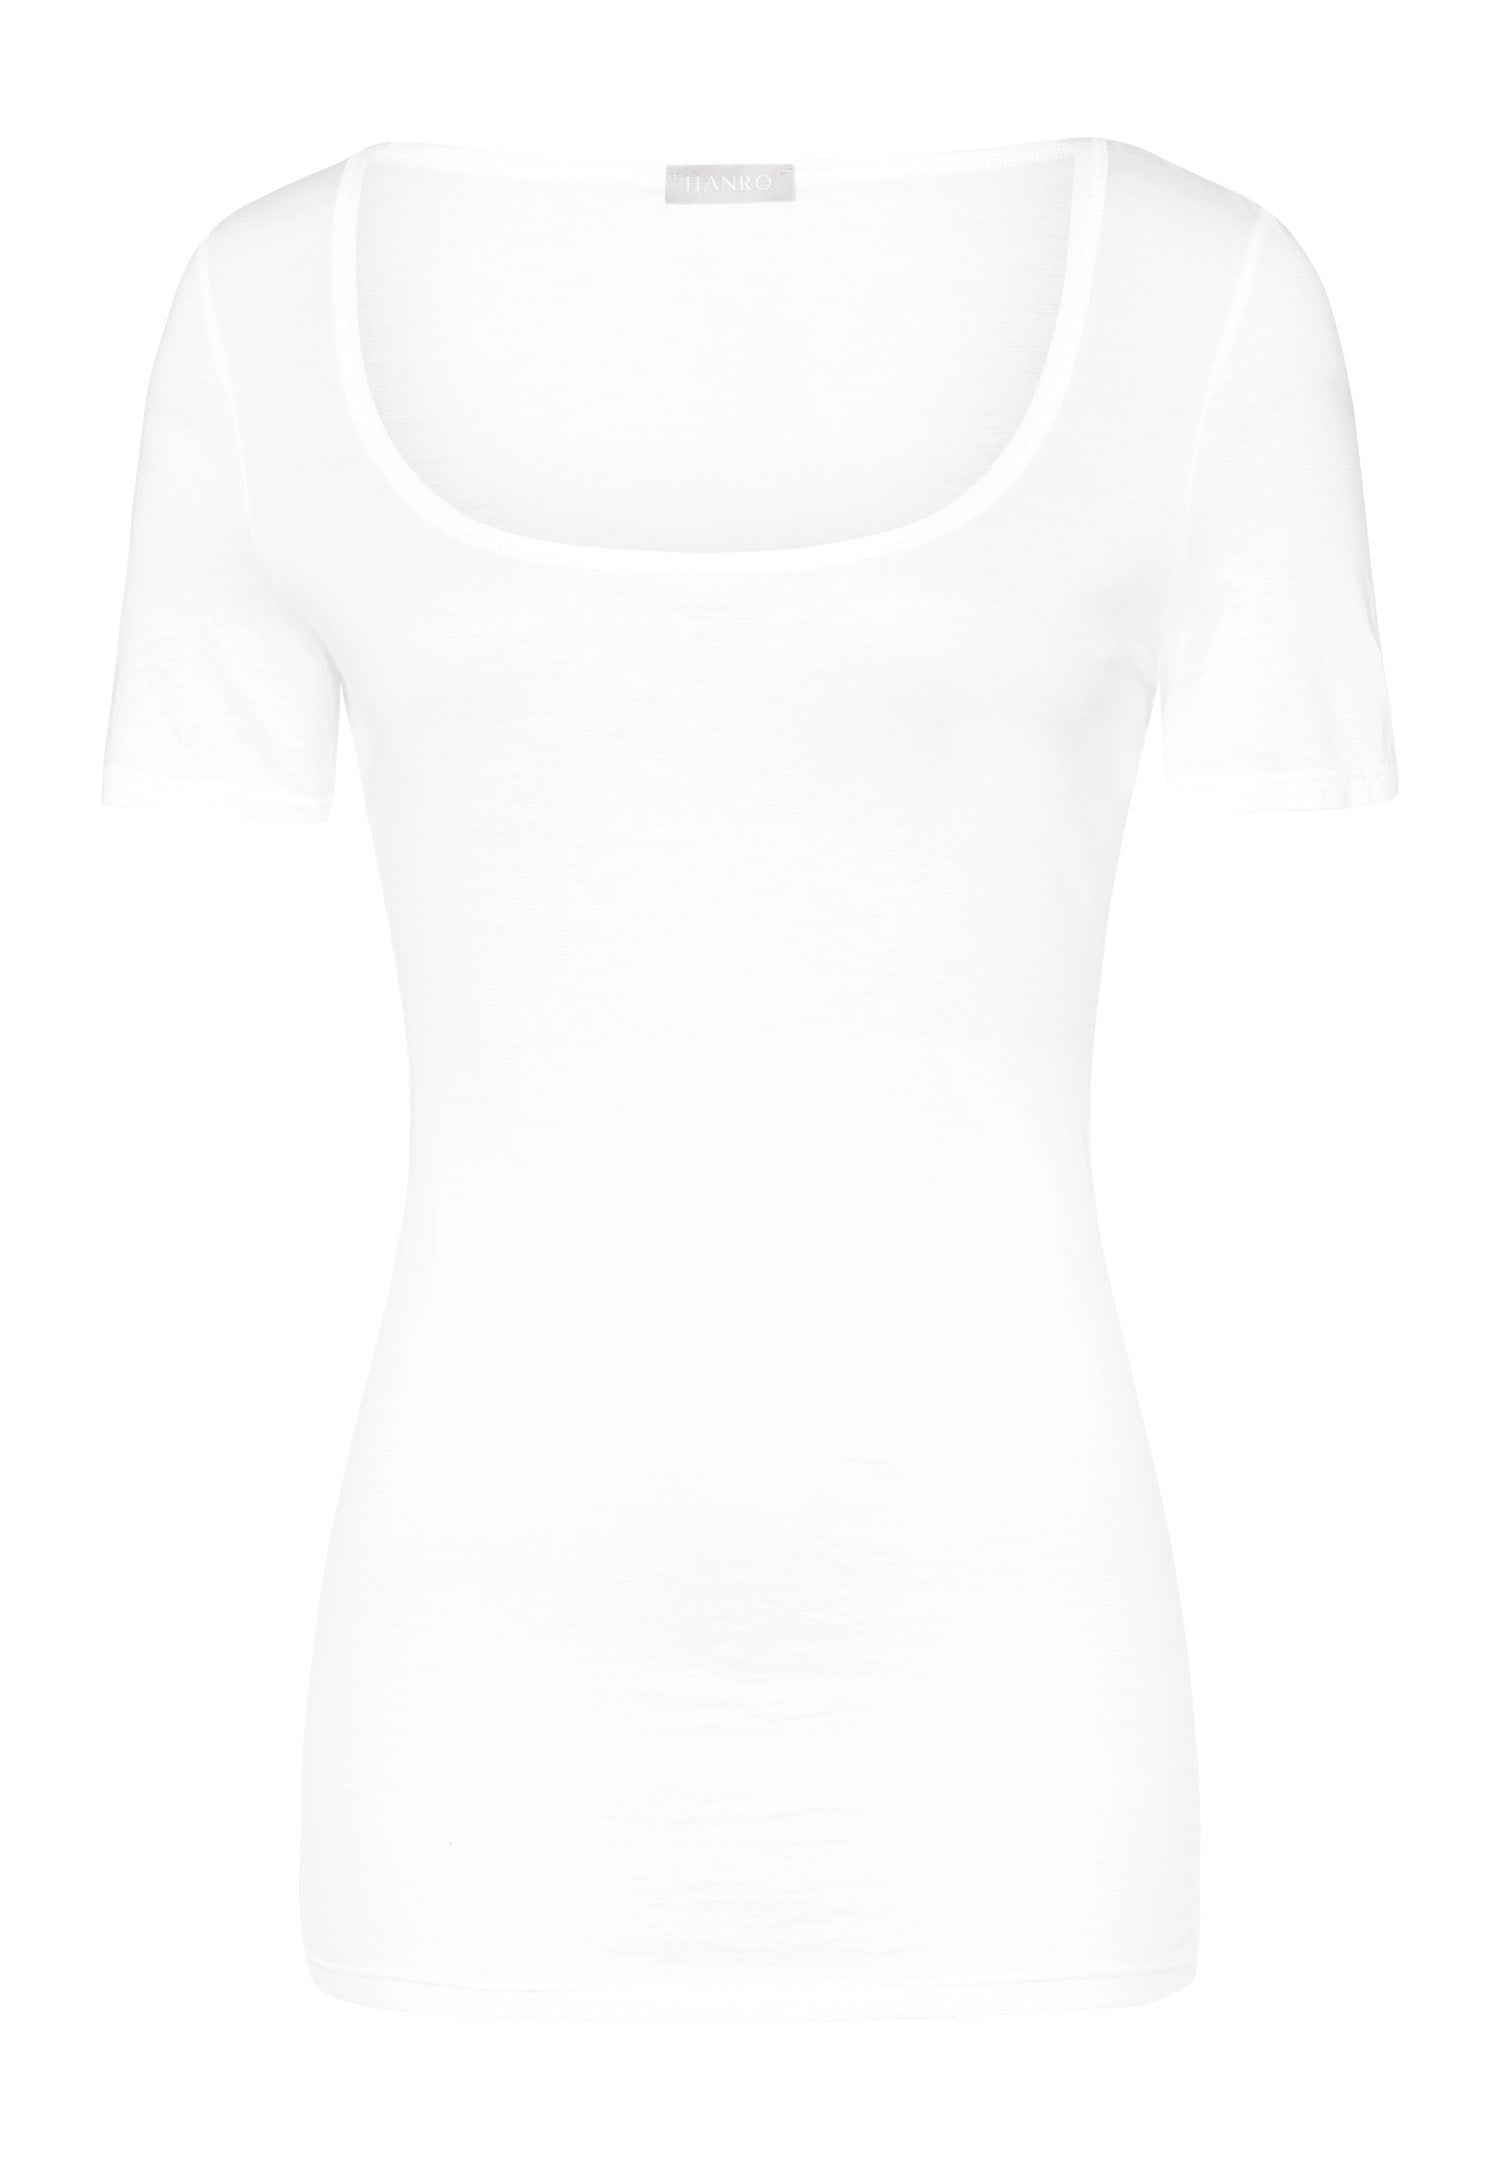 71345 Ultralight Short Sleeve Top - 101 White